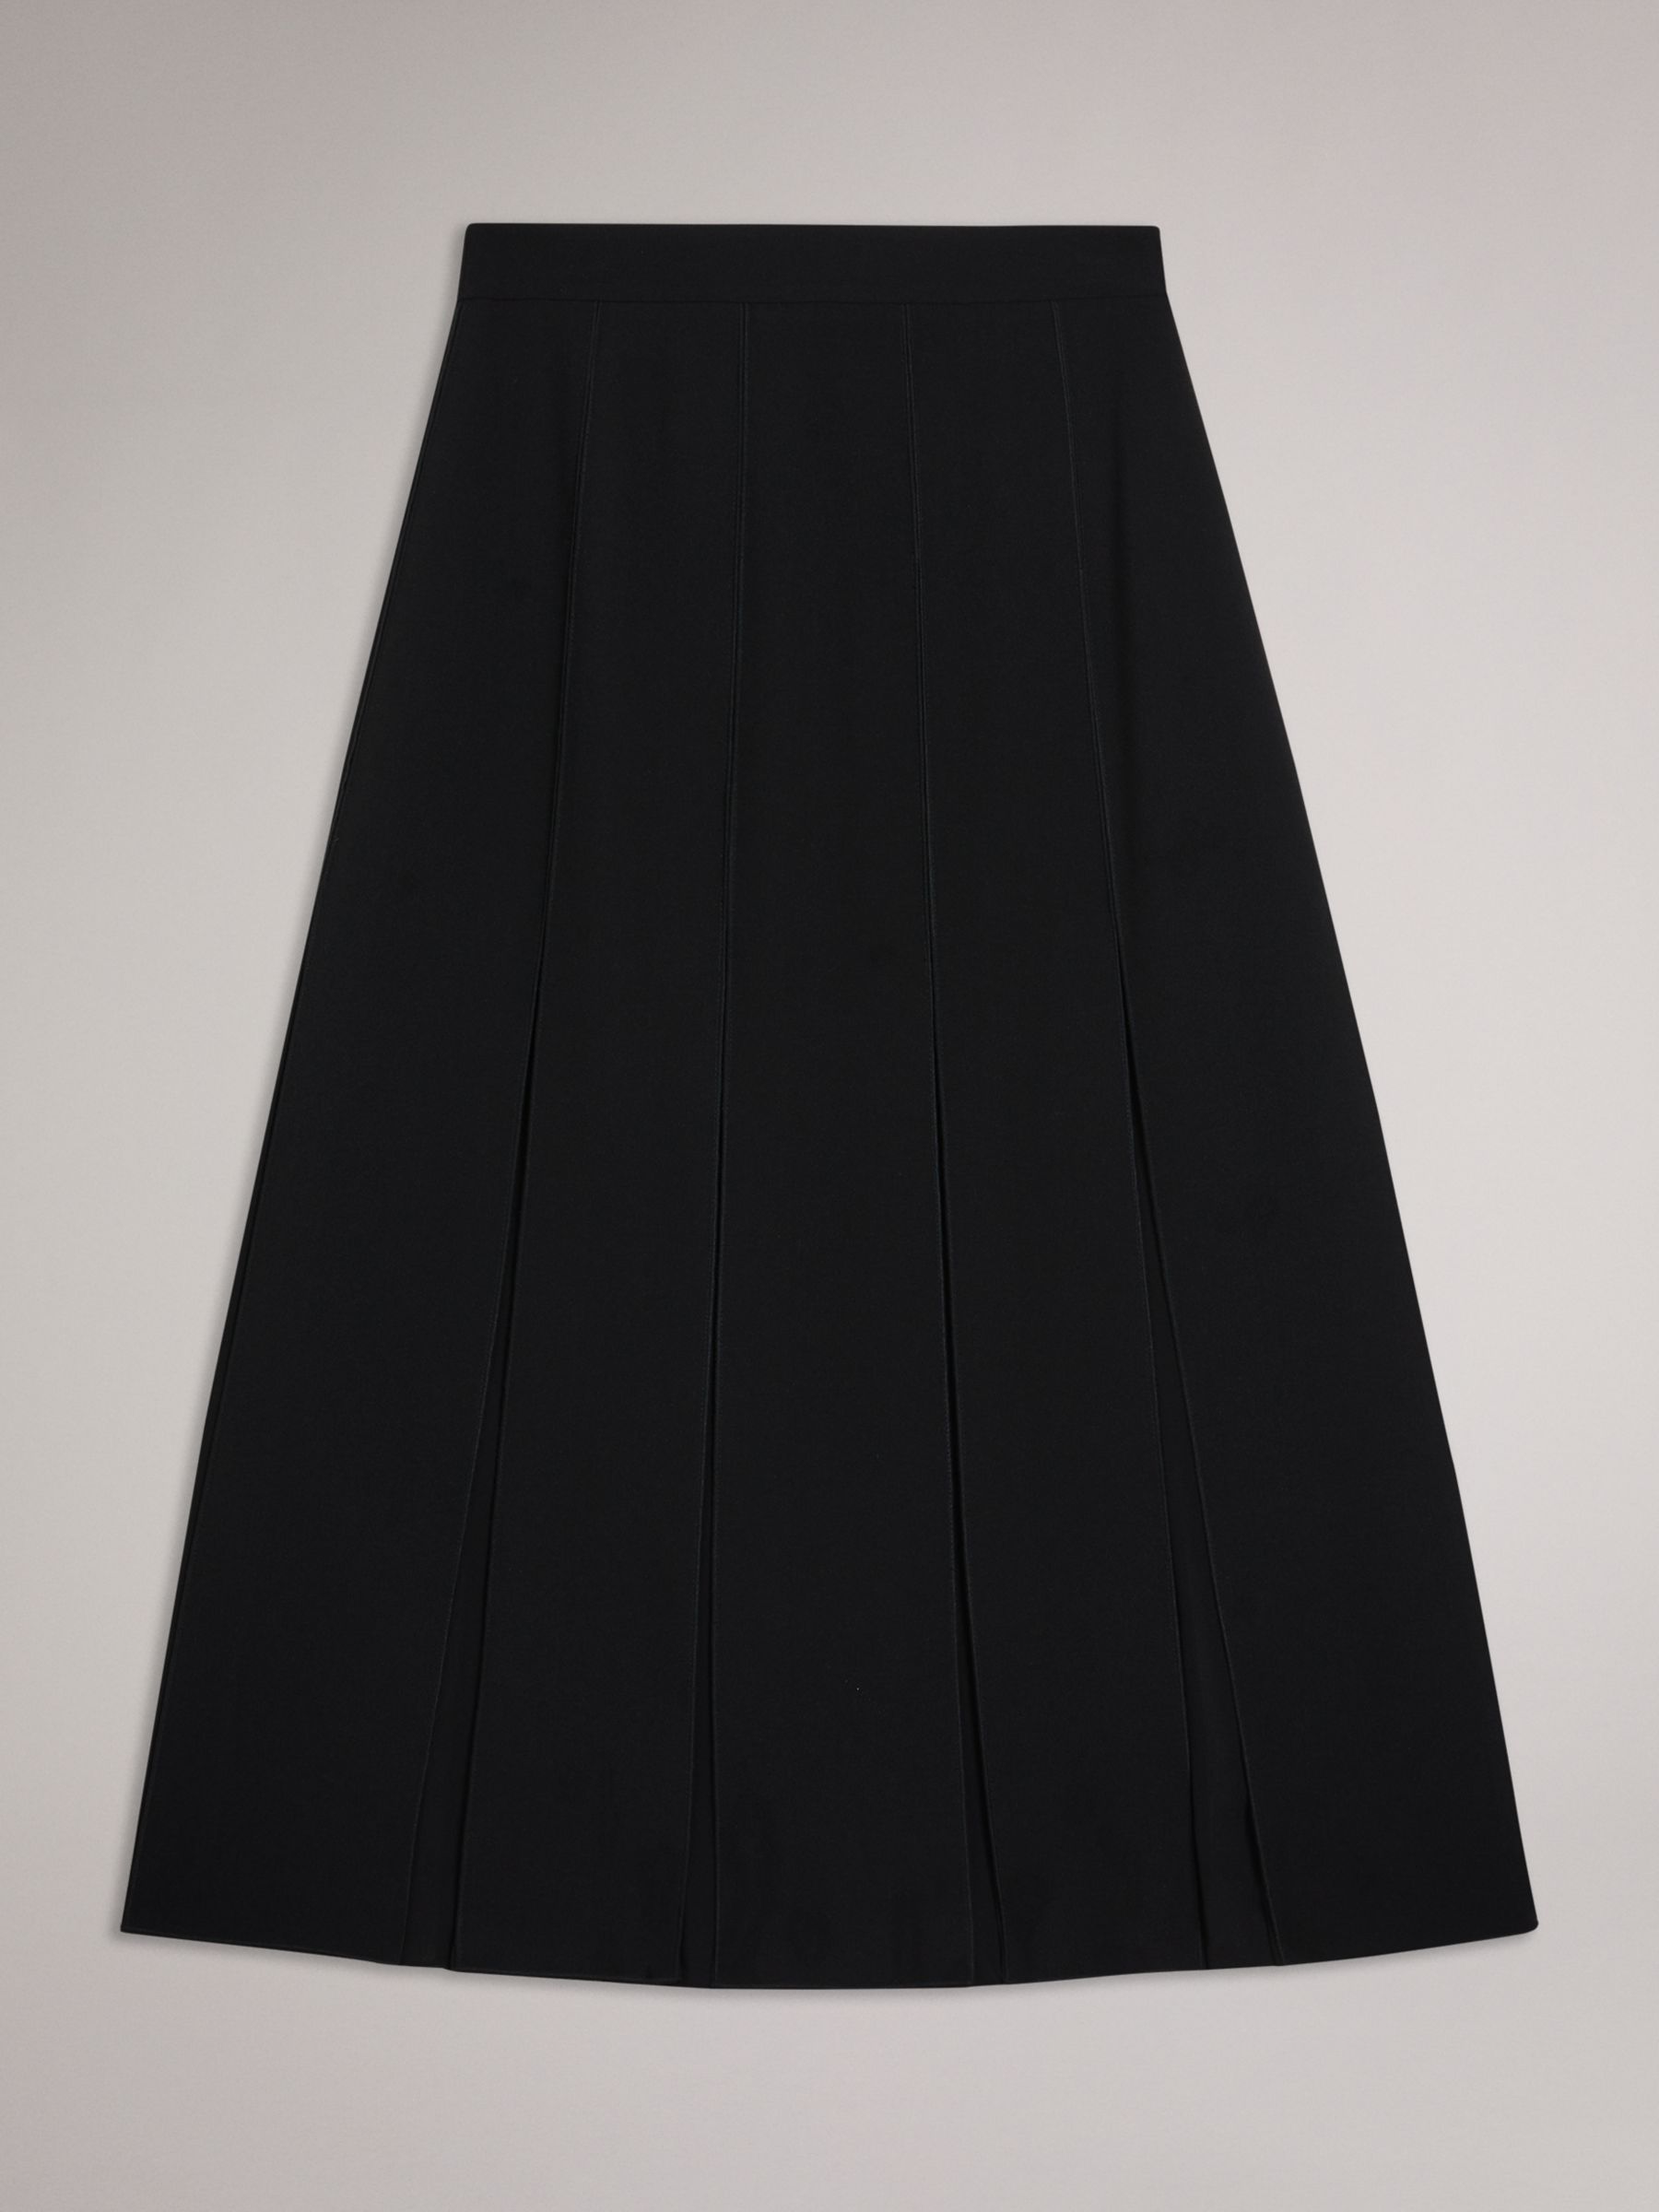 Ted Baker Addelia Midi Skirt, Black, 8